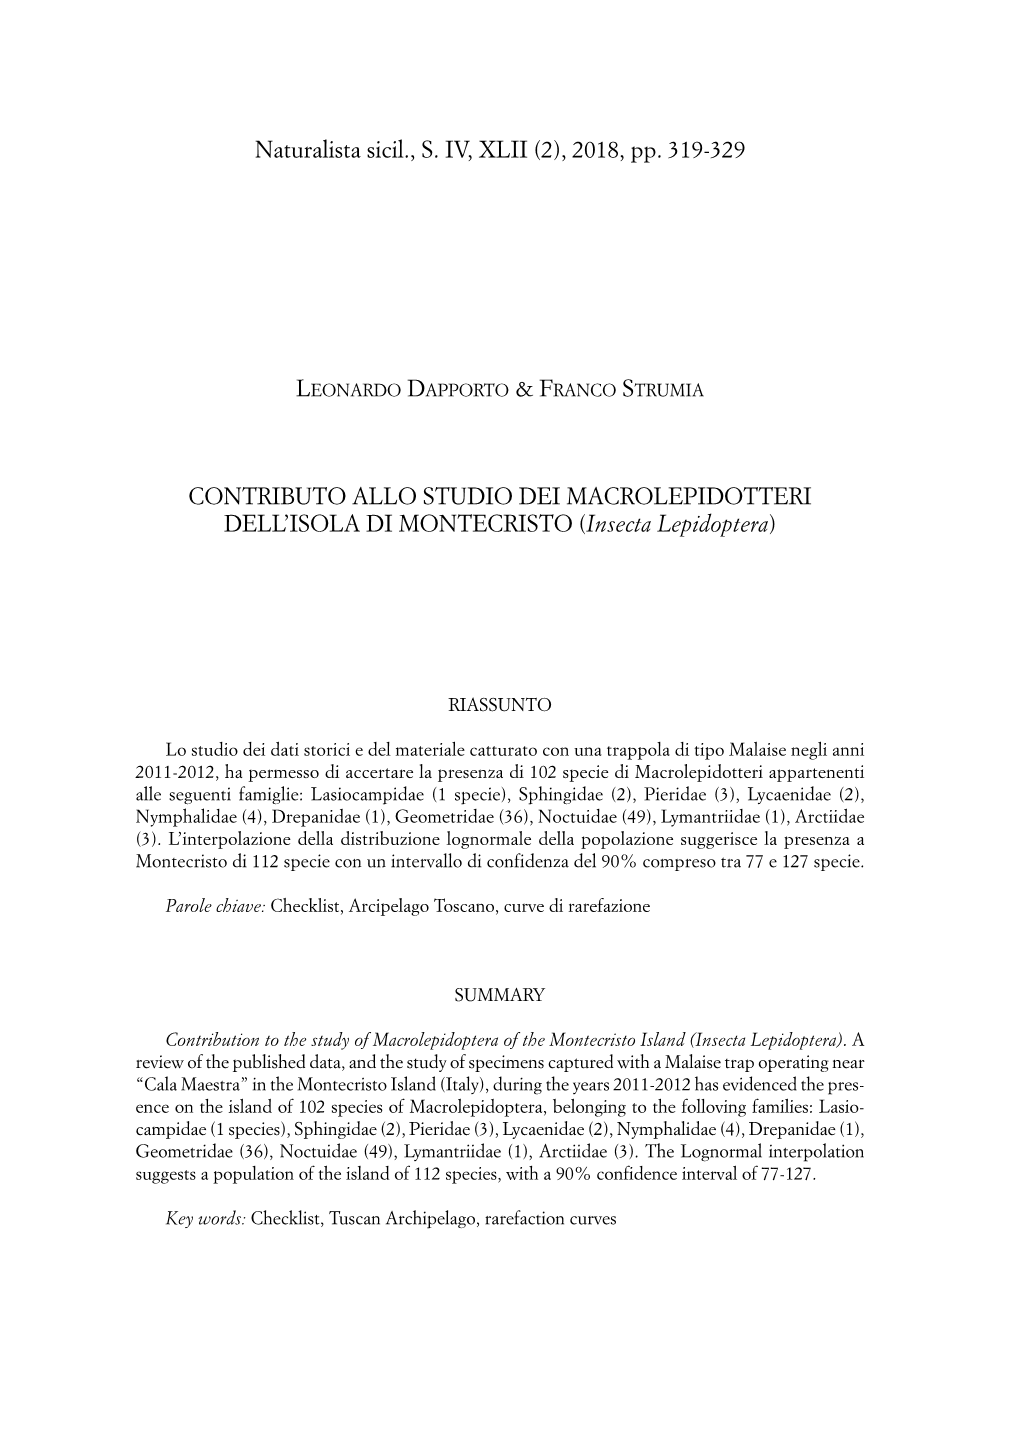 2018, Pp. 319-329 CONTRIBUTO ALLO STUDIO DEI MACROLEPIDOTTERI DELL'isola DI MONTECRISTO